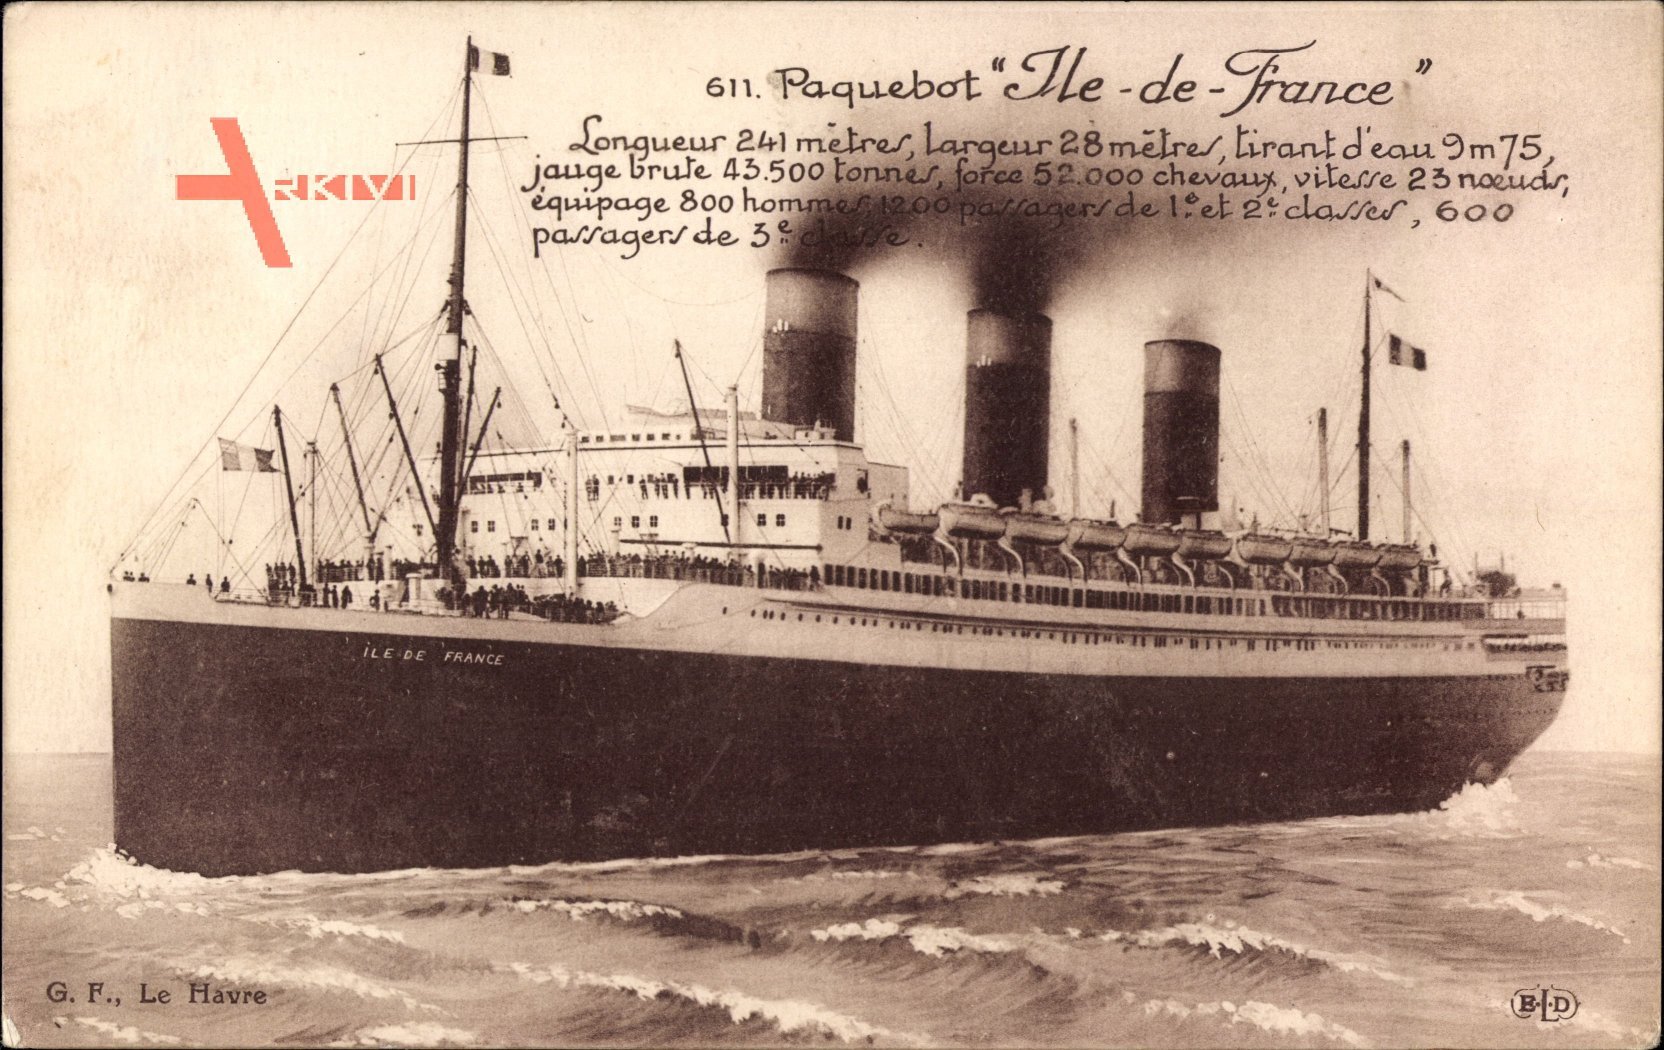 Paquebot Ile de France, Dampfschiff, CGT, French Line